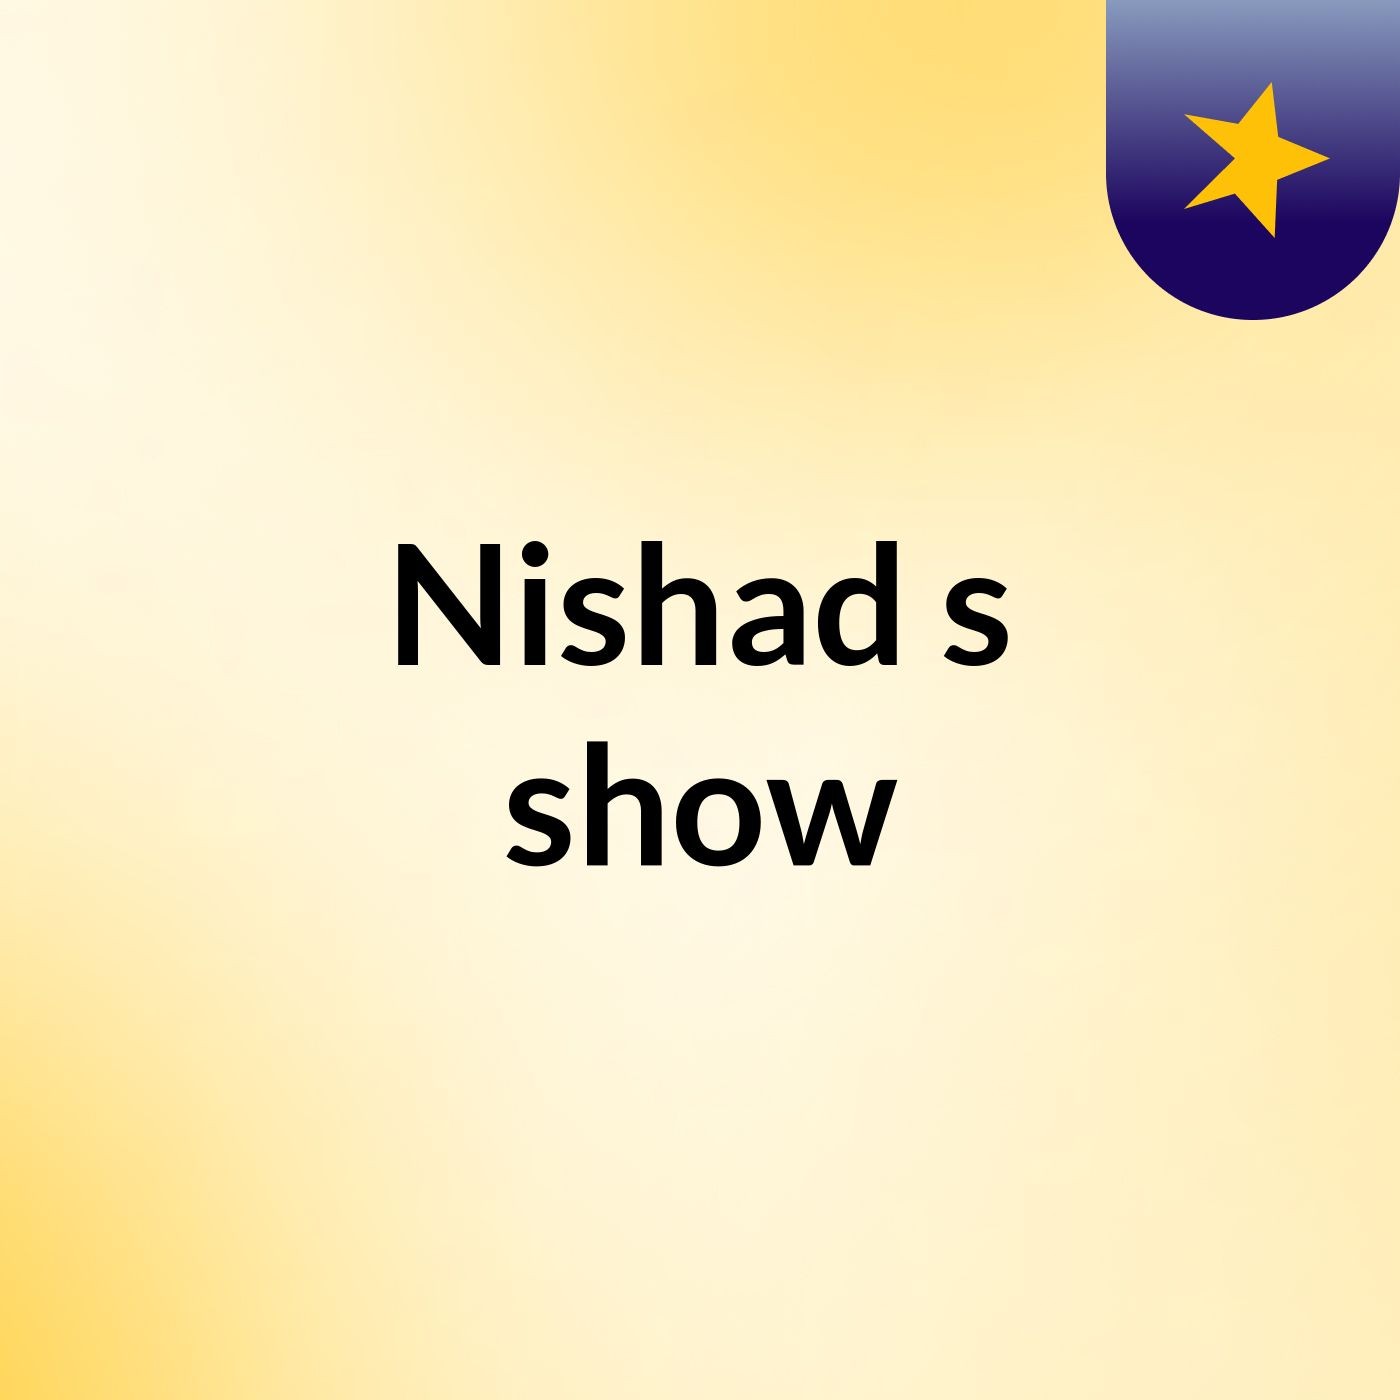 Nishad's show